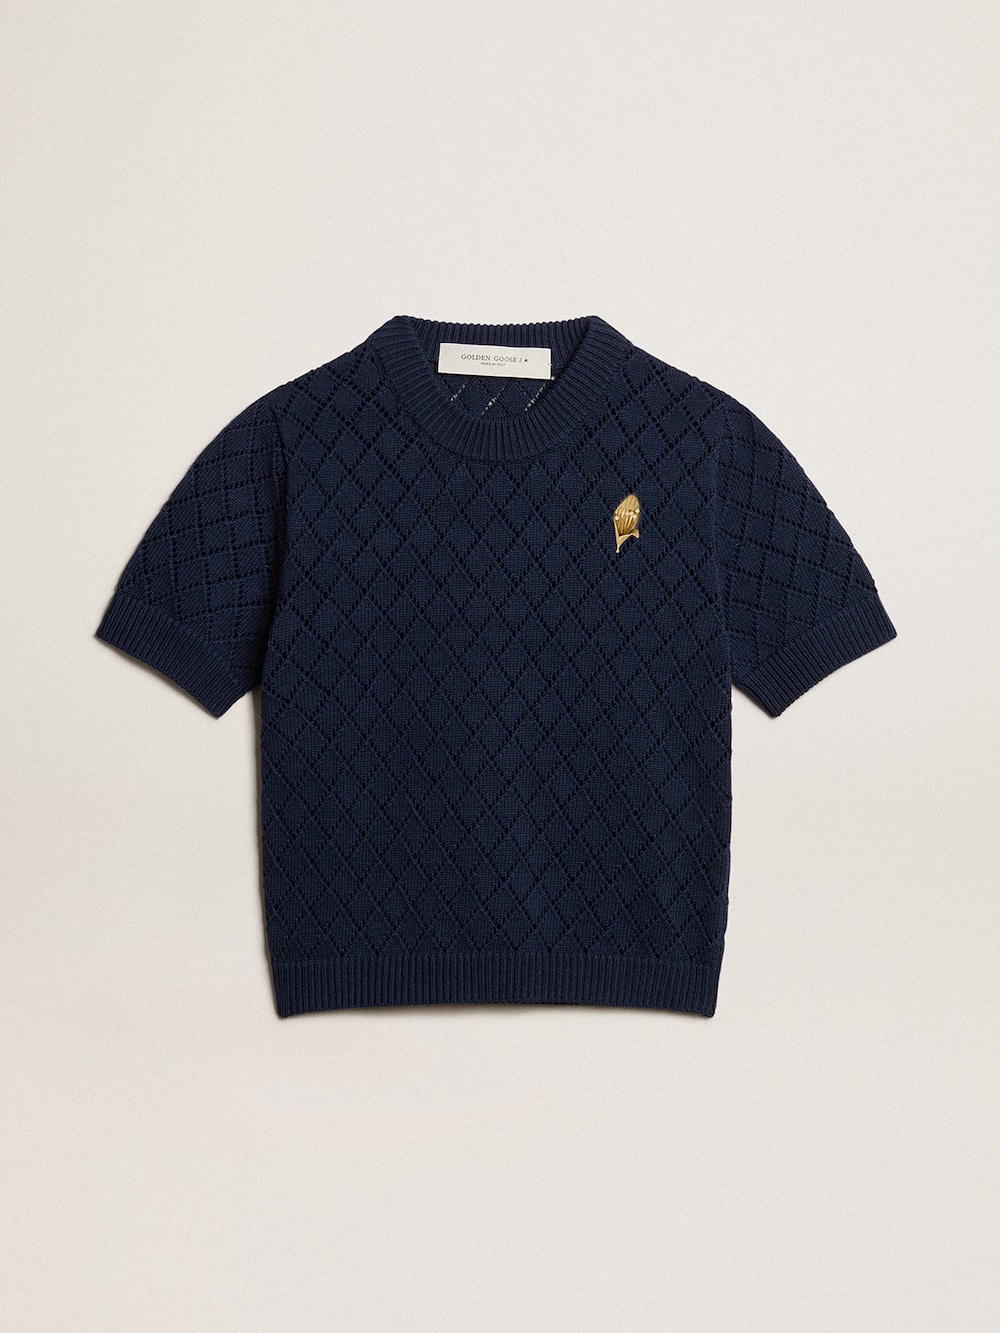 Golden Goose - Camiseta abierta con motivo argyle color azul noche in 